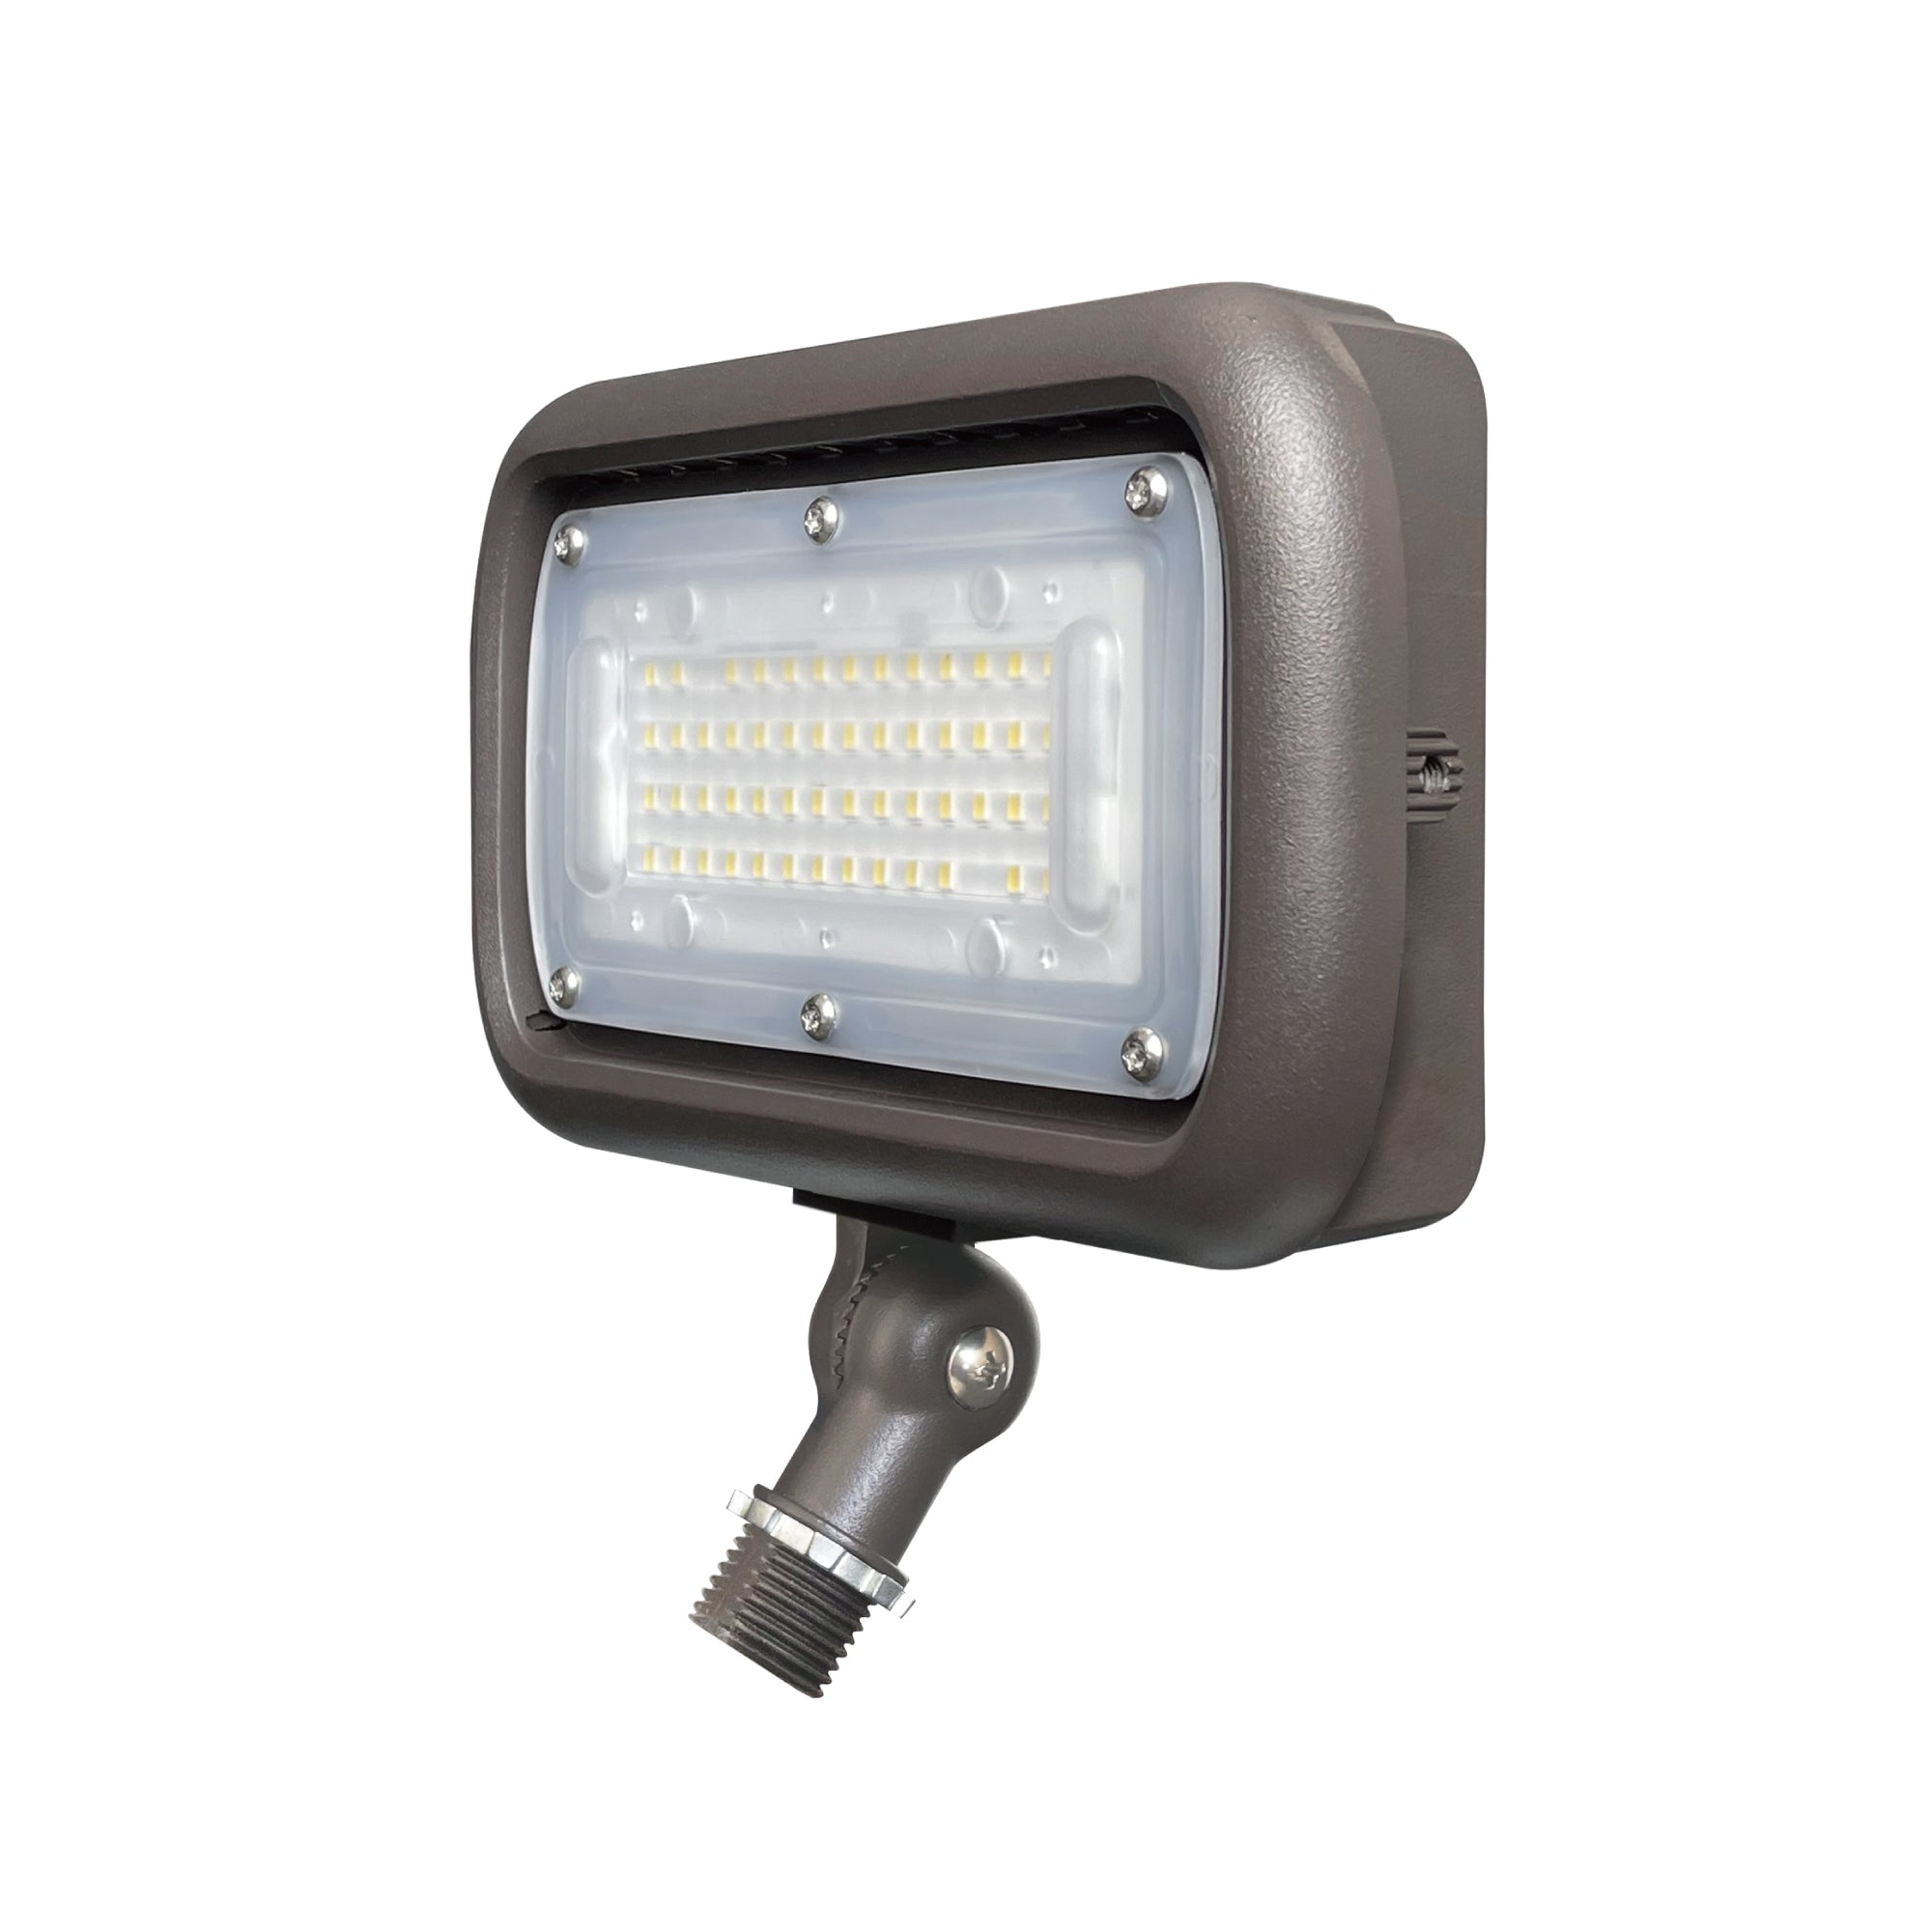 45W Security LED Flood Light, 120-277V AC, IP66 Waterproof, UL Listed